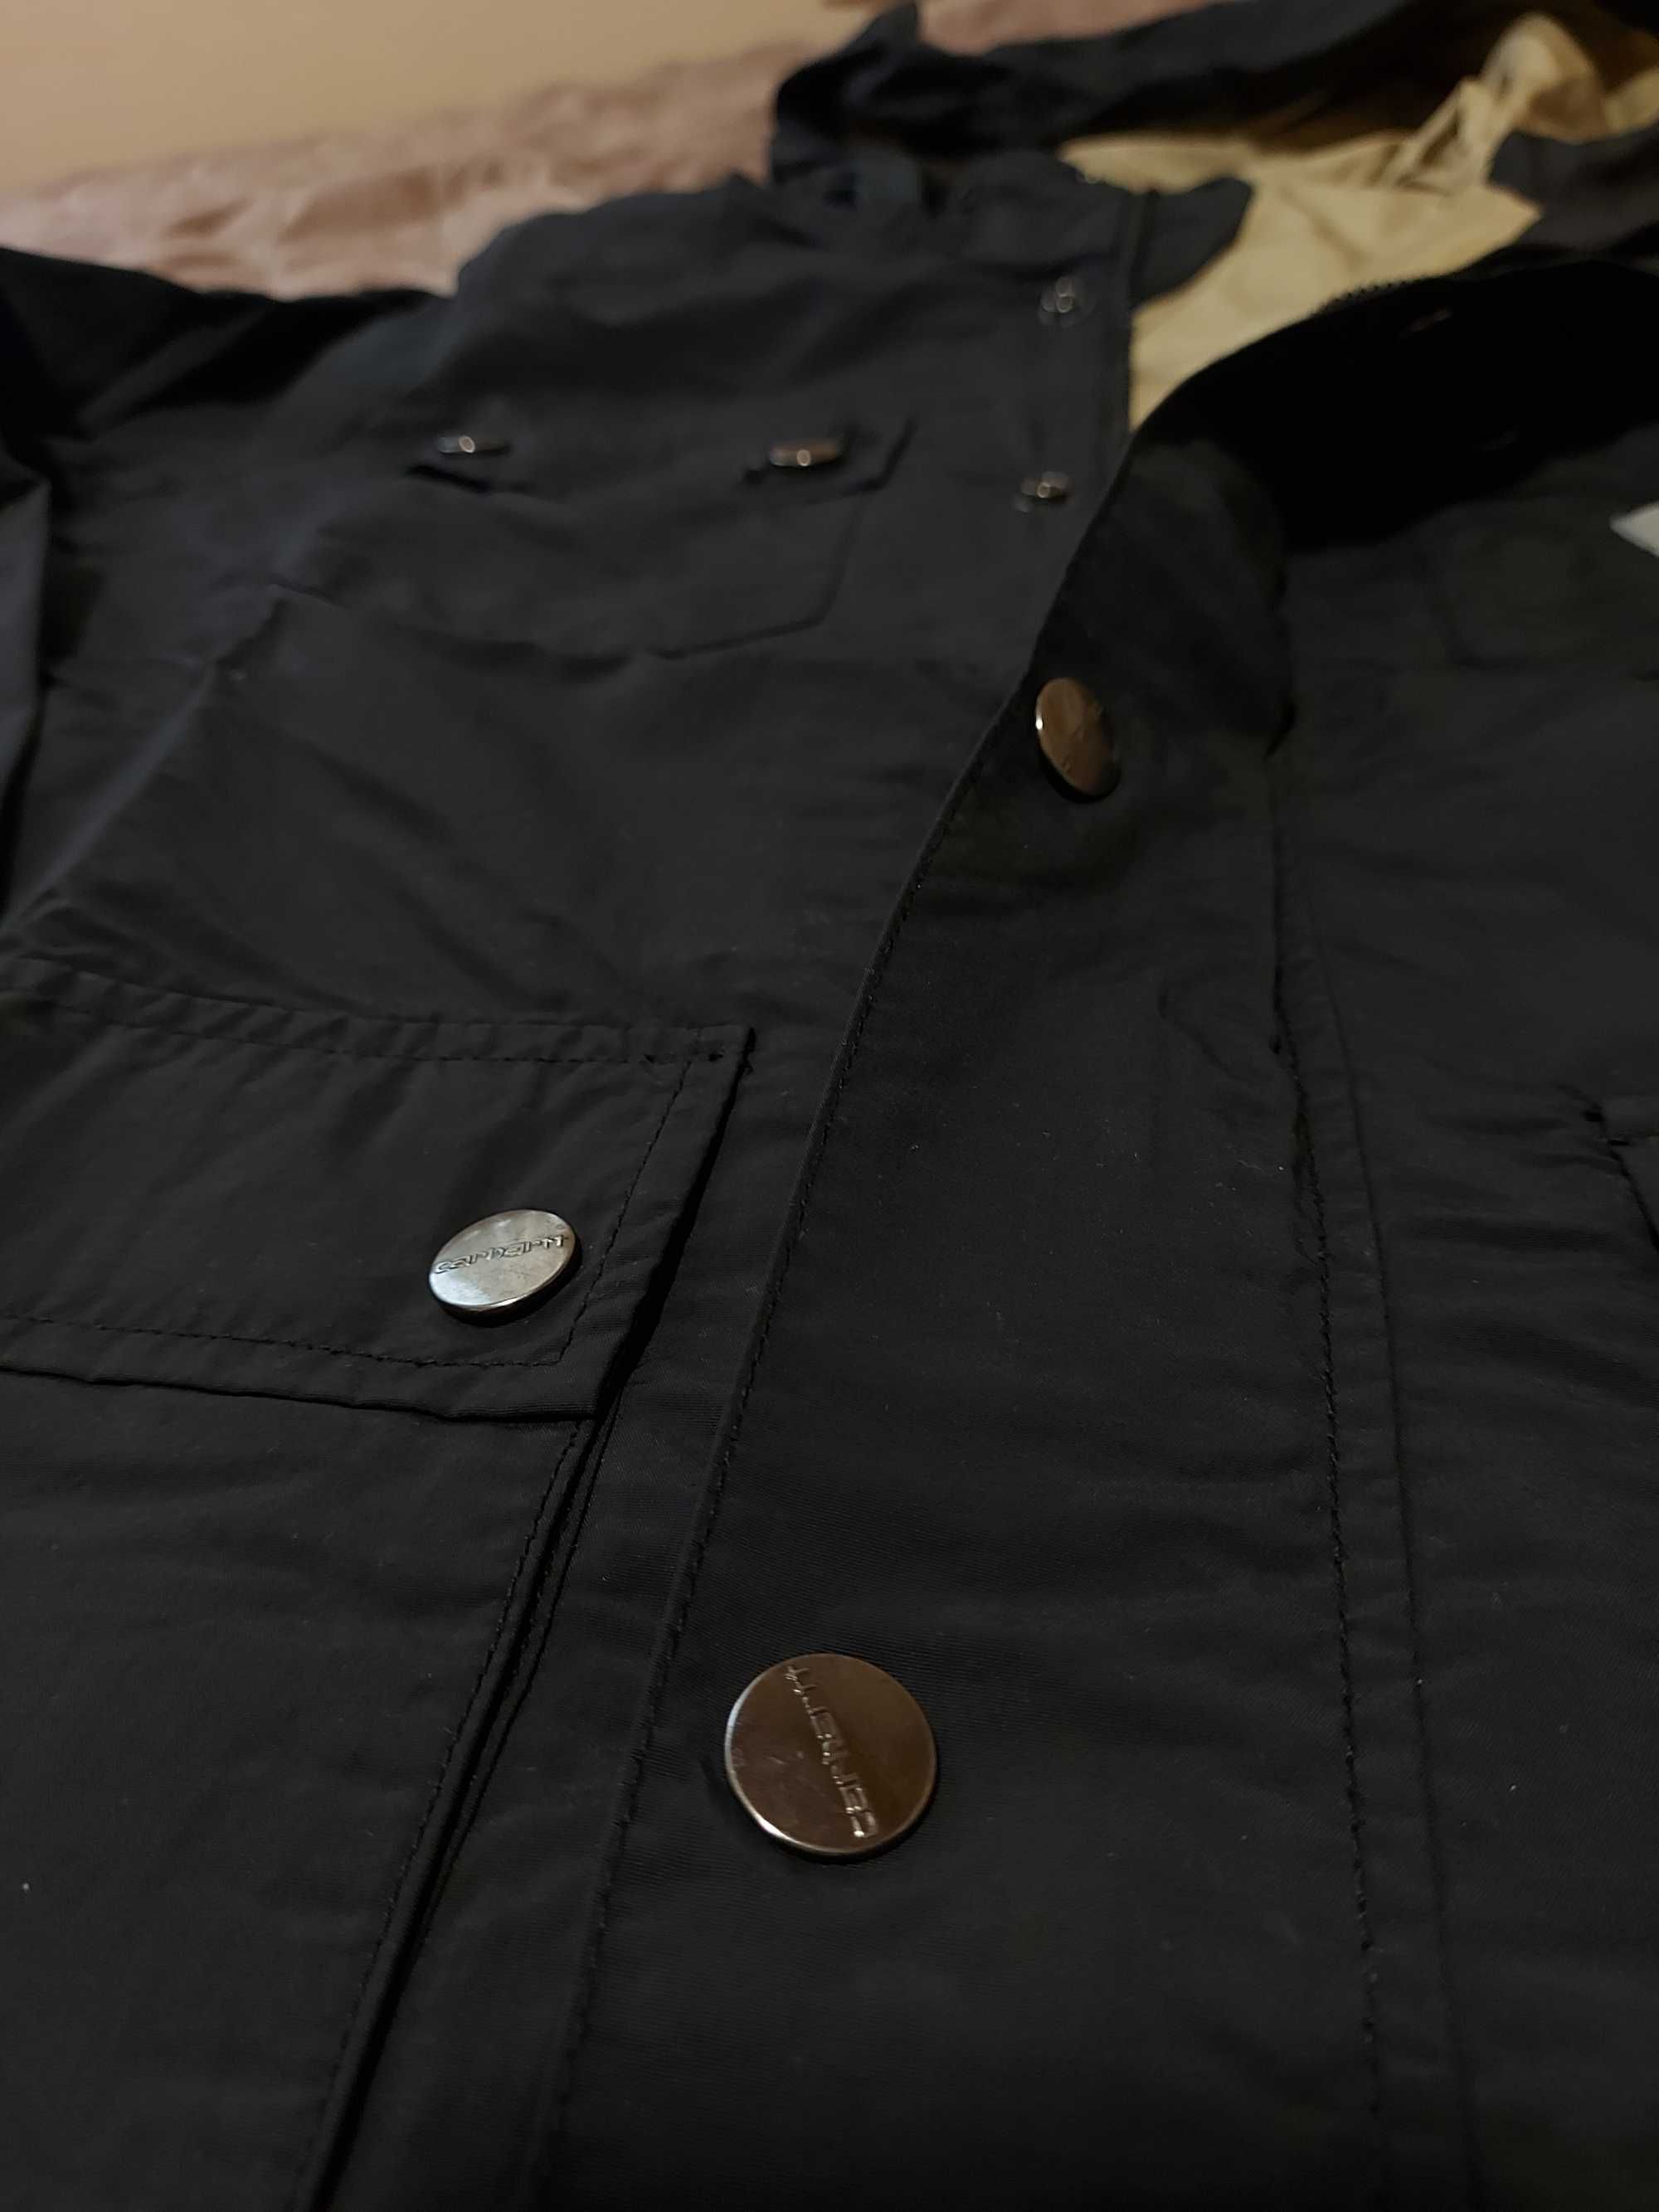 Charhartt carter jacket размер М